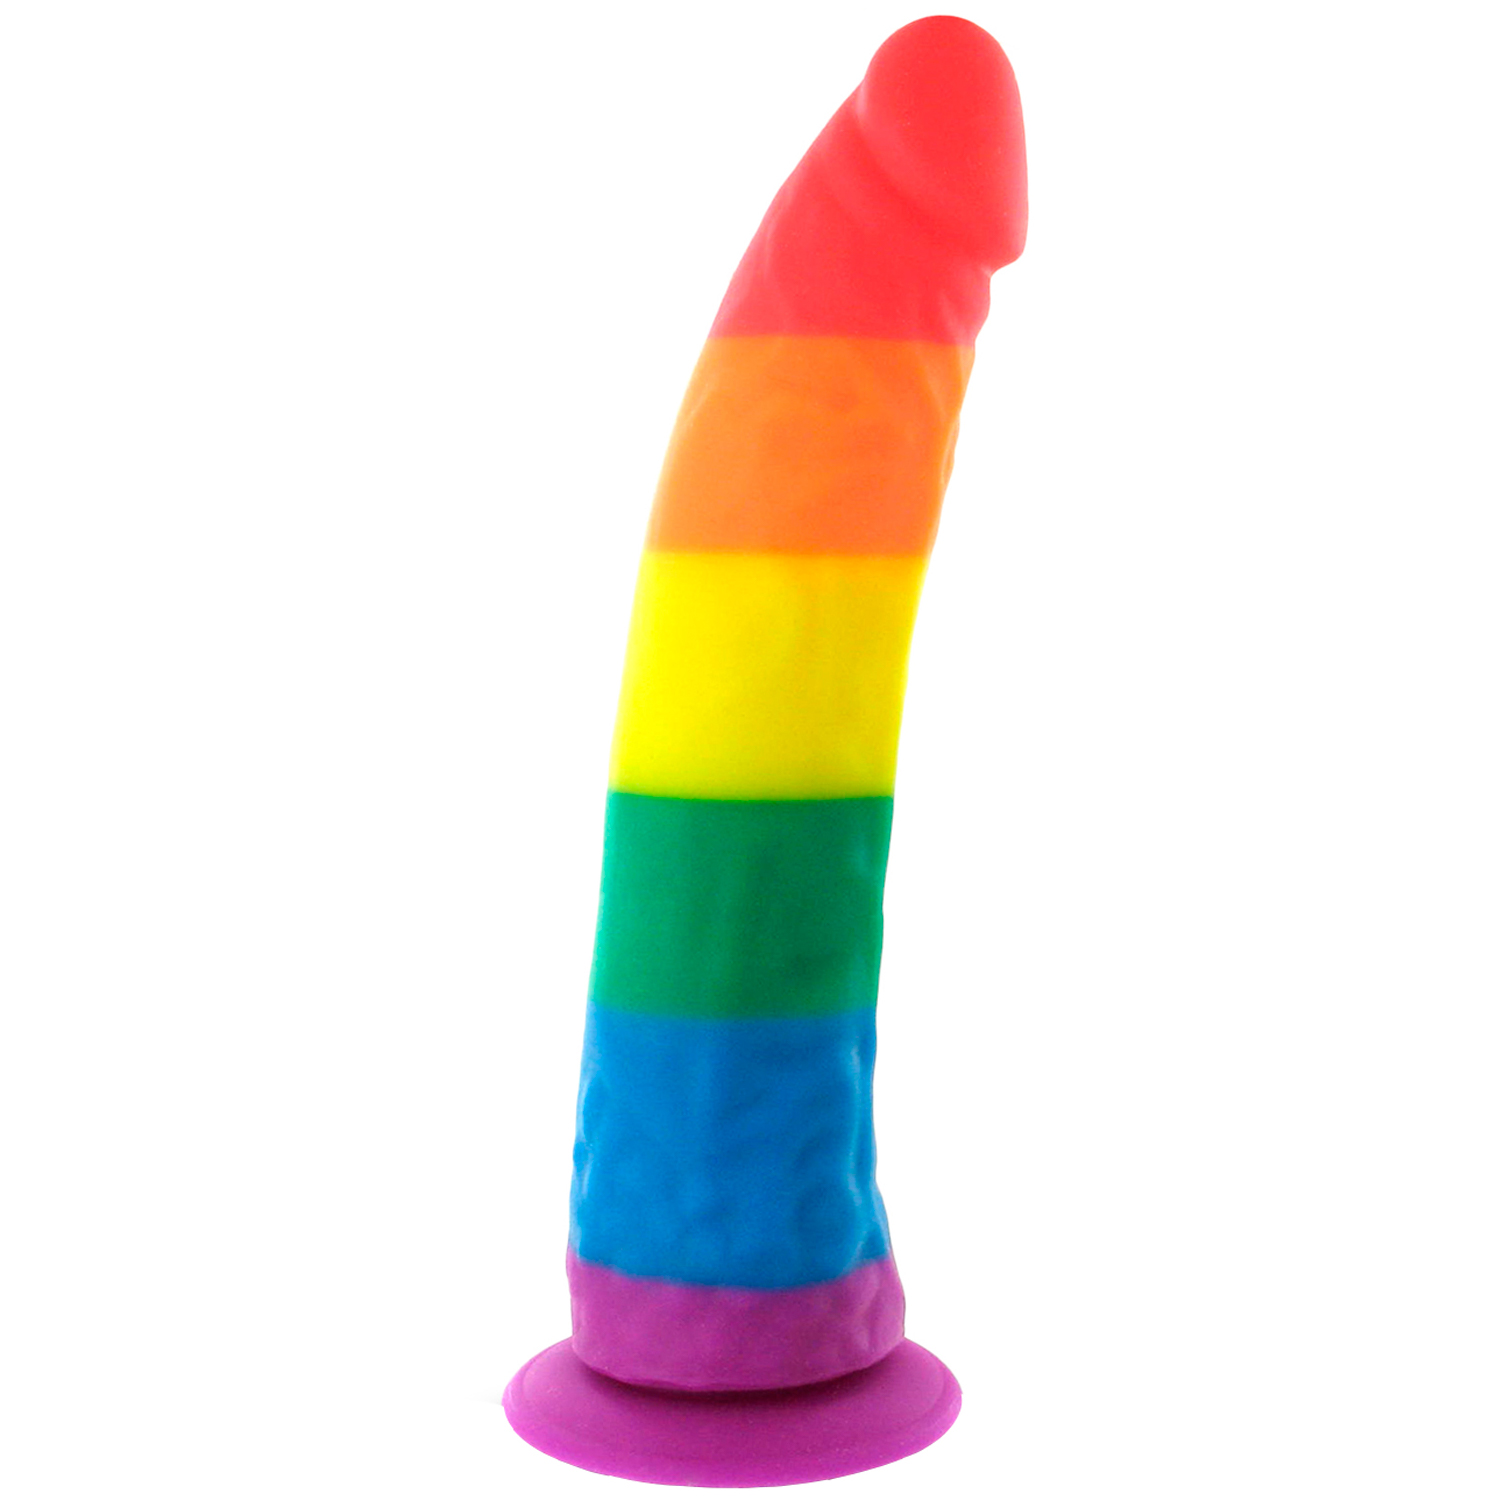 Autoblow Pride Dildo Original Rainbow Gode en Silicone - Couleurs mélangées